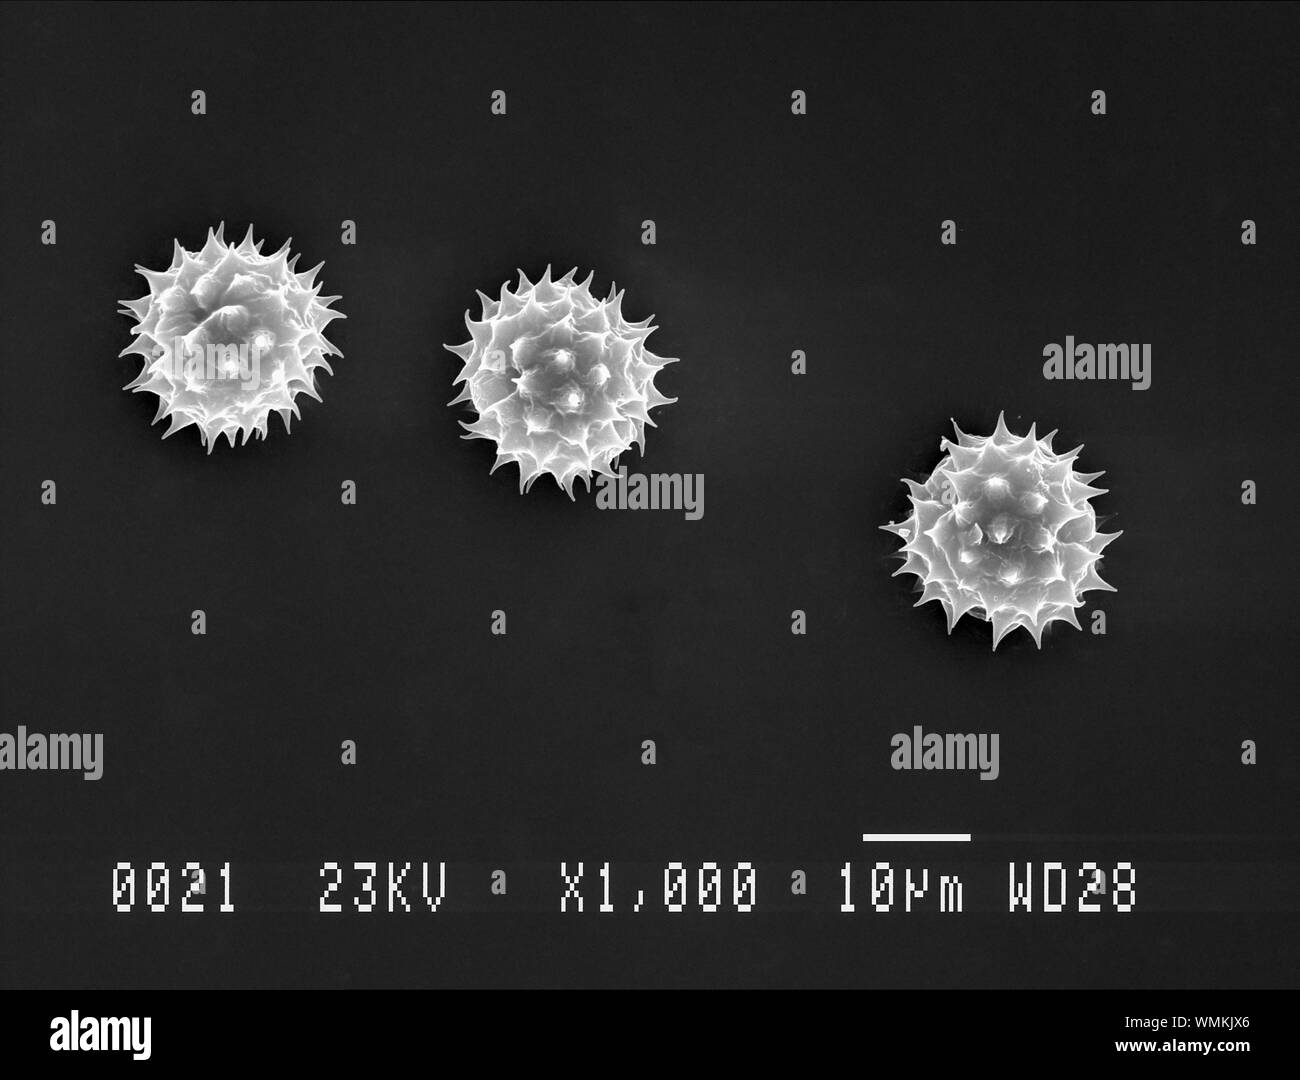 Daisy pollen under electron microscope Stock Photo